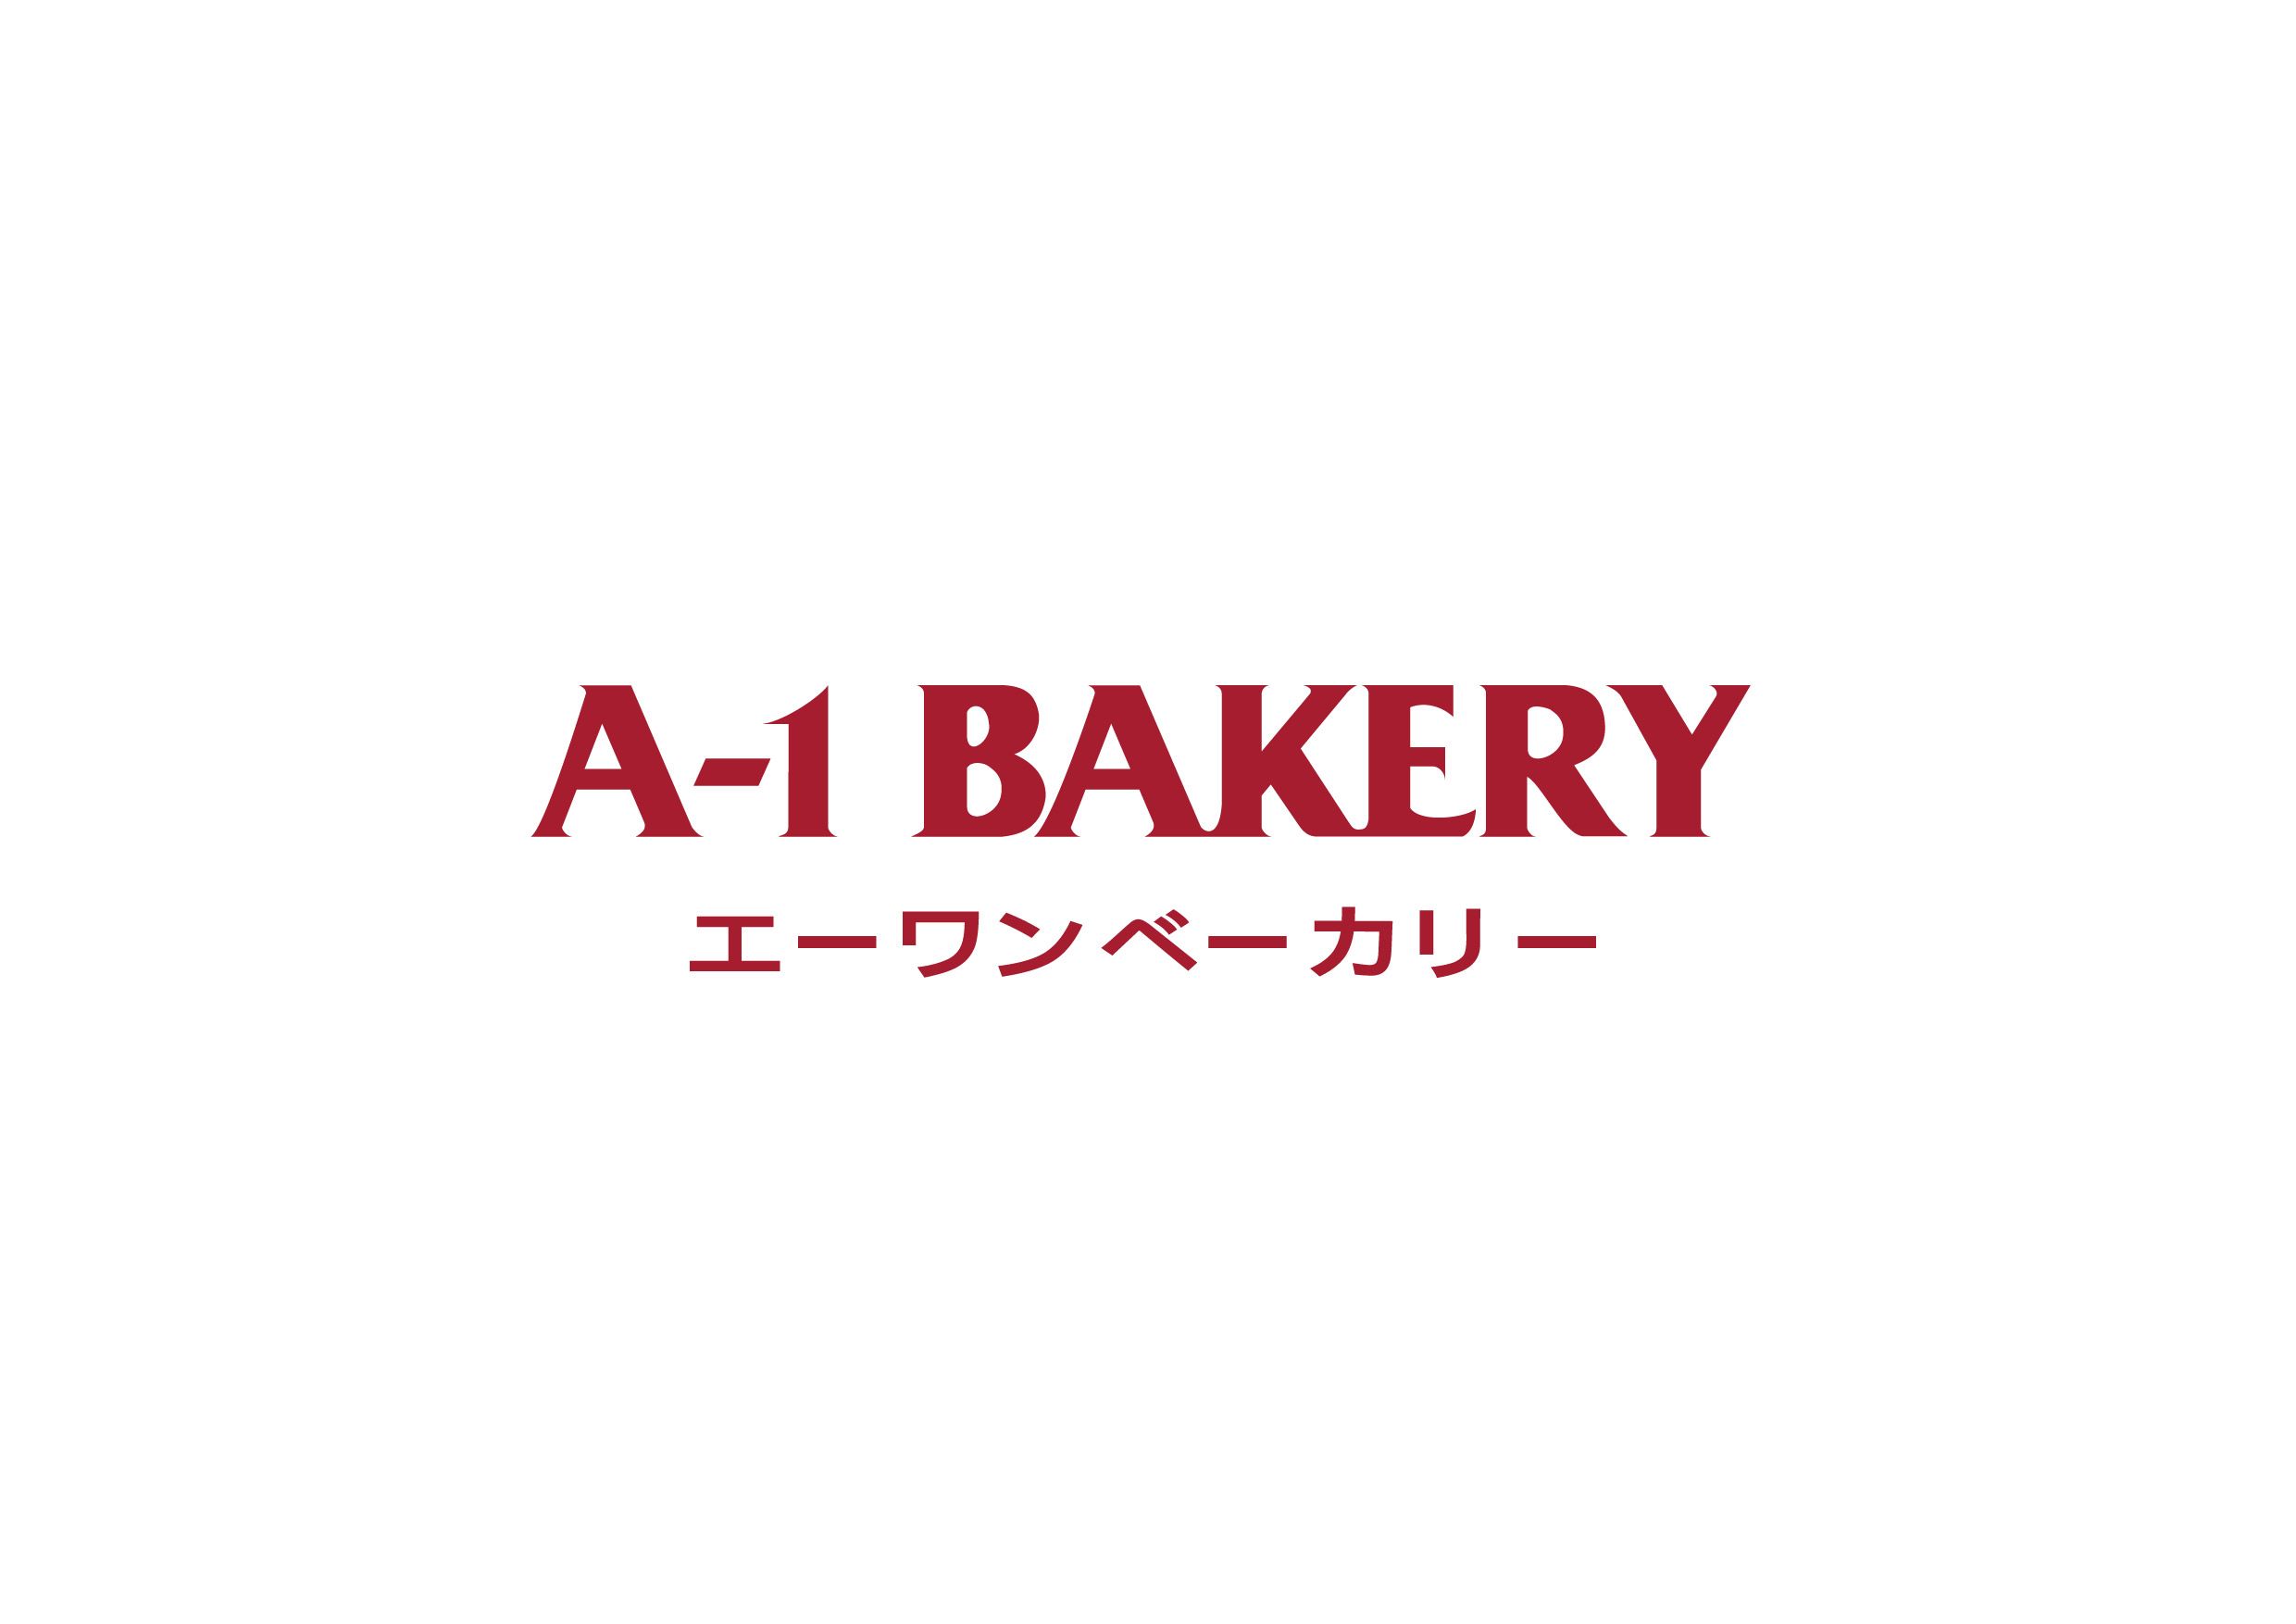 A-1 Bakery 英王麵包  logo